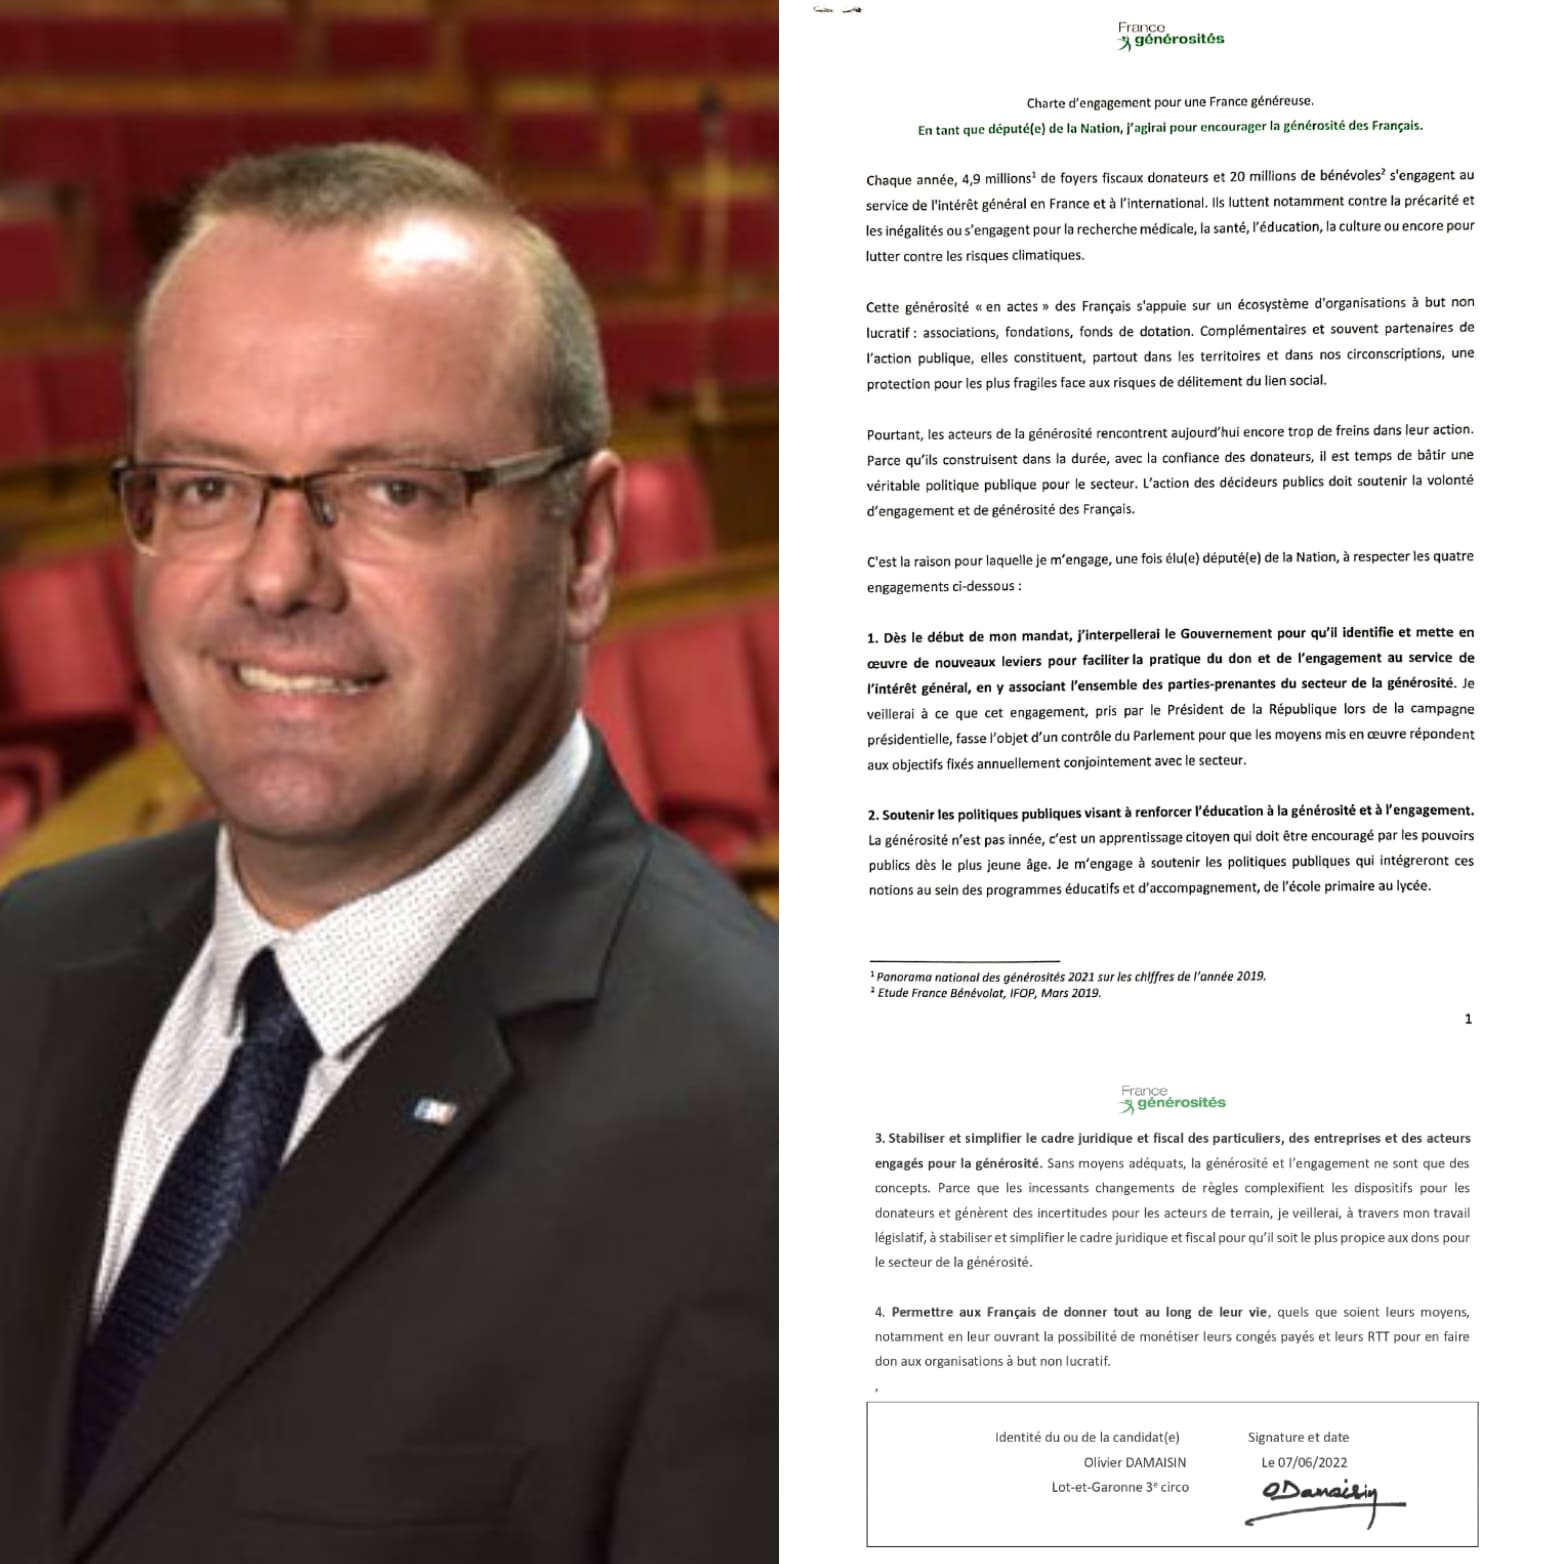 Charte d’engagement France généreuse - Olivier Damaisin